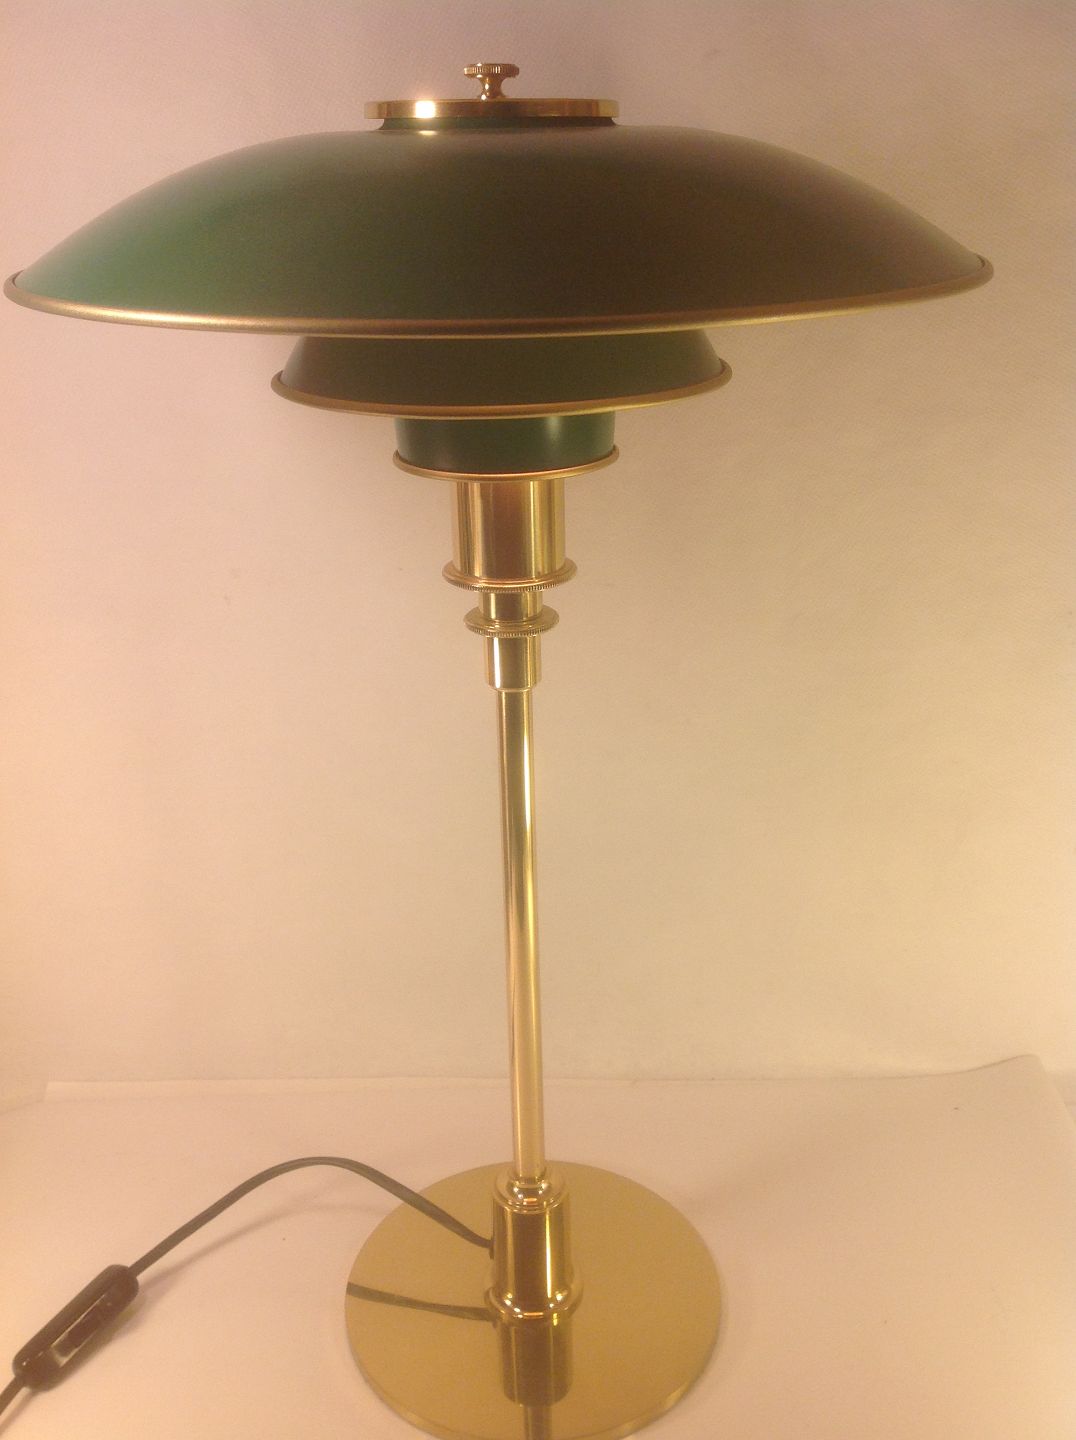 www.Antikvitet.net Poul Henningsen / Louis Poulsen 3/2 * Bordlampe ( model ) i forgyldt metal og grønne